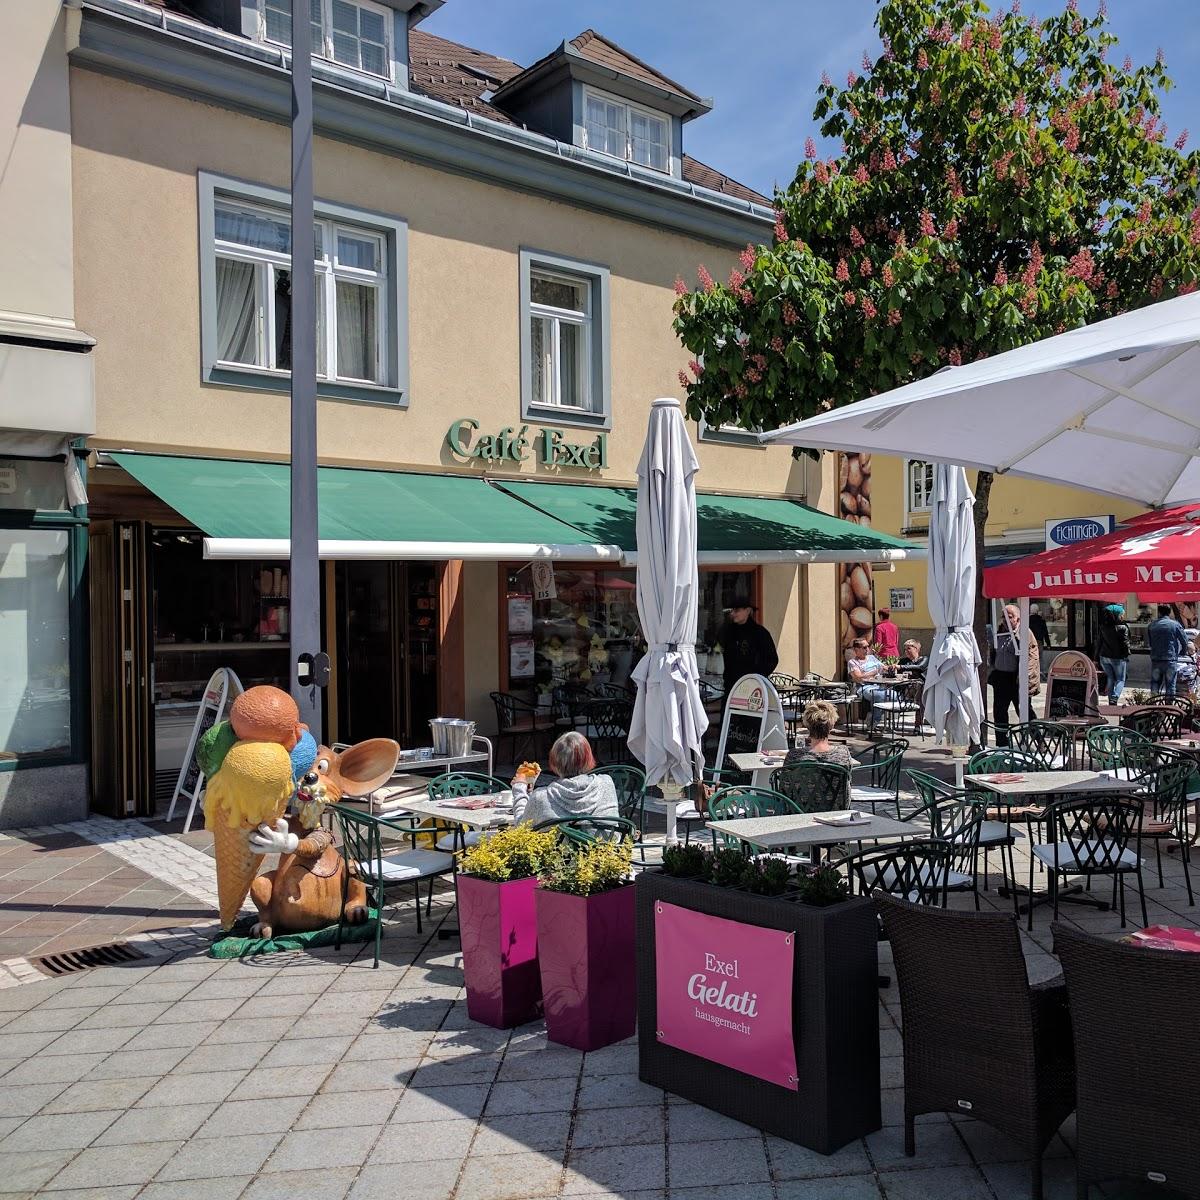 Restaurant "Cafe Exel" in Amstetten